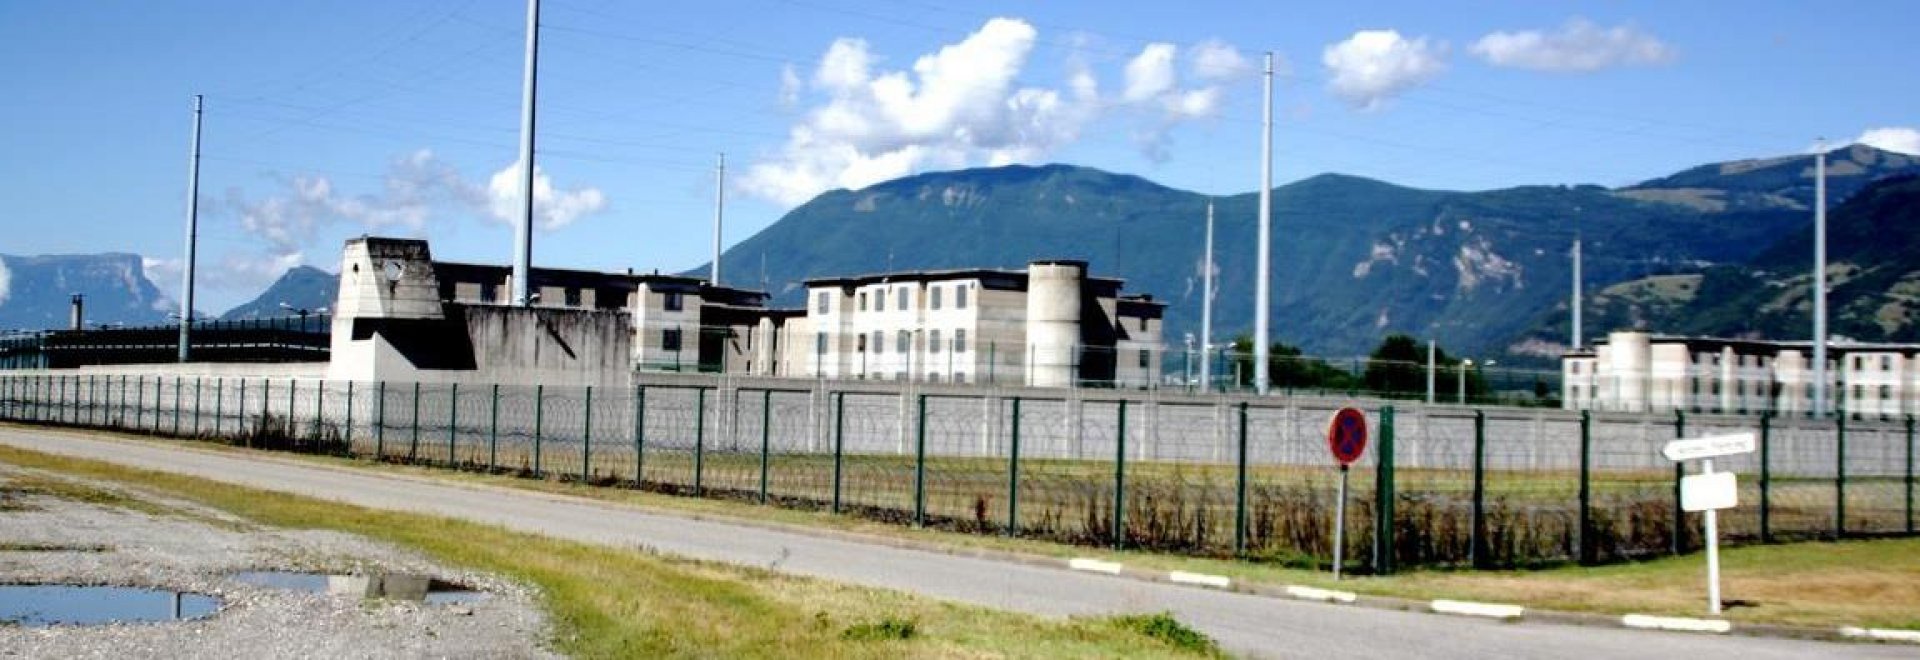 Centre pénitentiaire d'Aiton